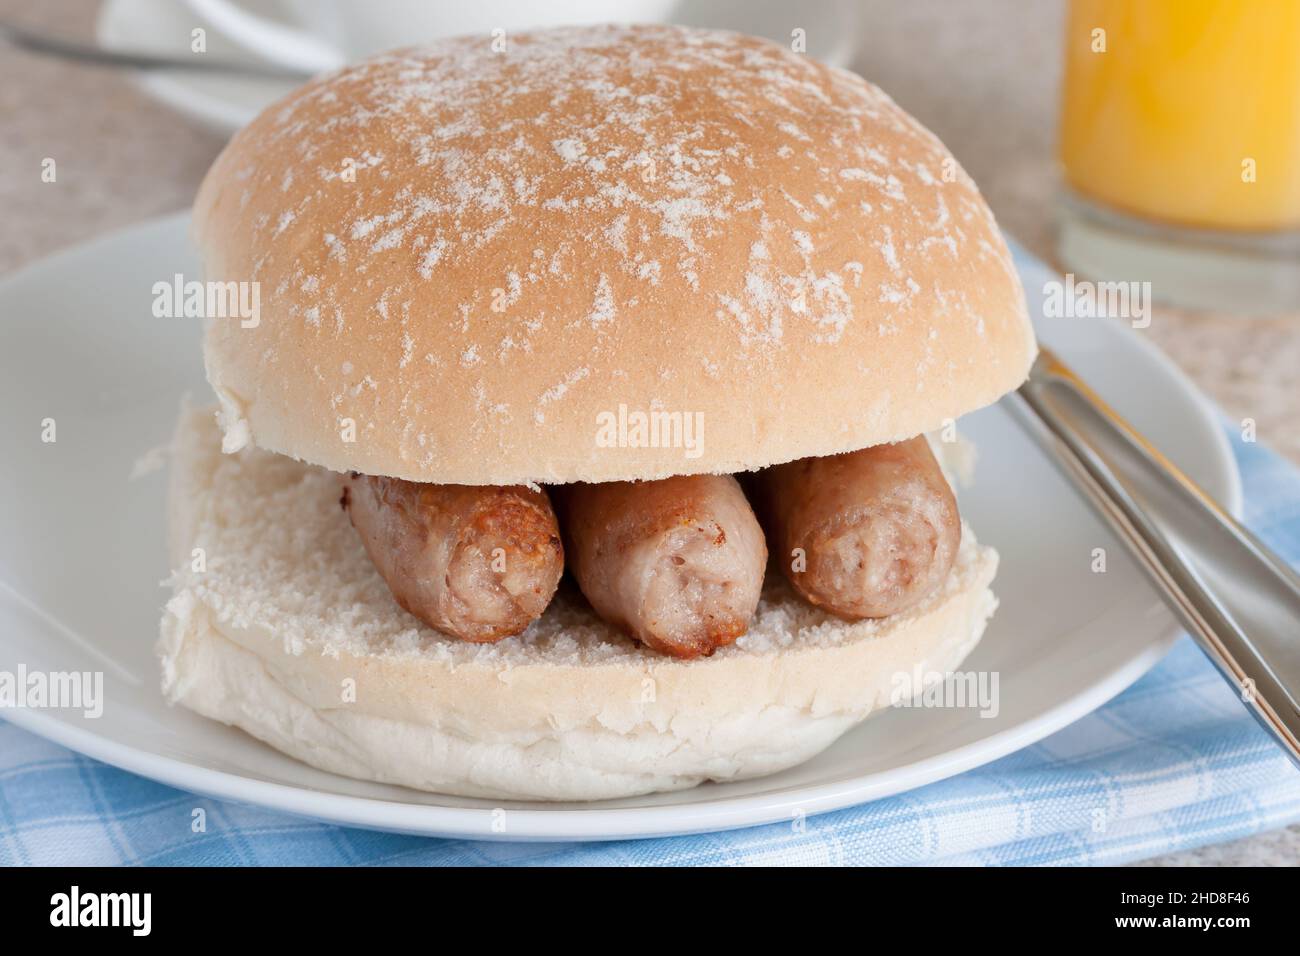 Würstchen-Sandwich oder Würstchen-bap ein beliebter britischer Frühstückssnack Stockfoto